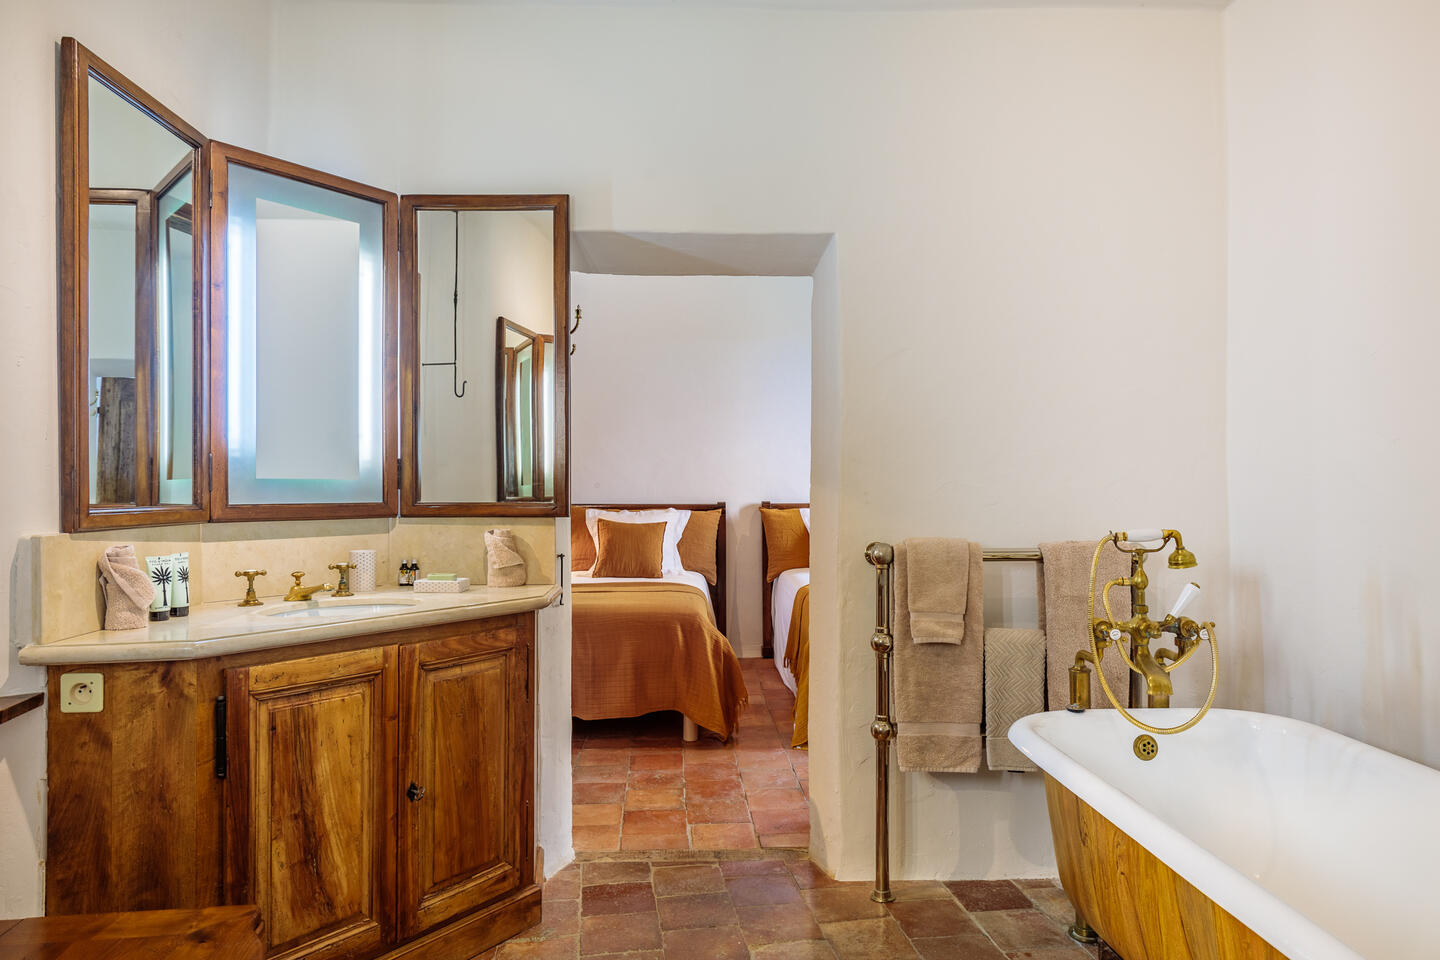 96 - Domaine de Luberon: Villa: Bathroom